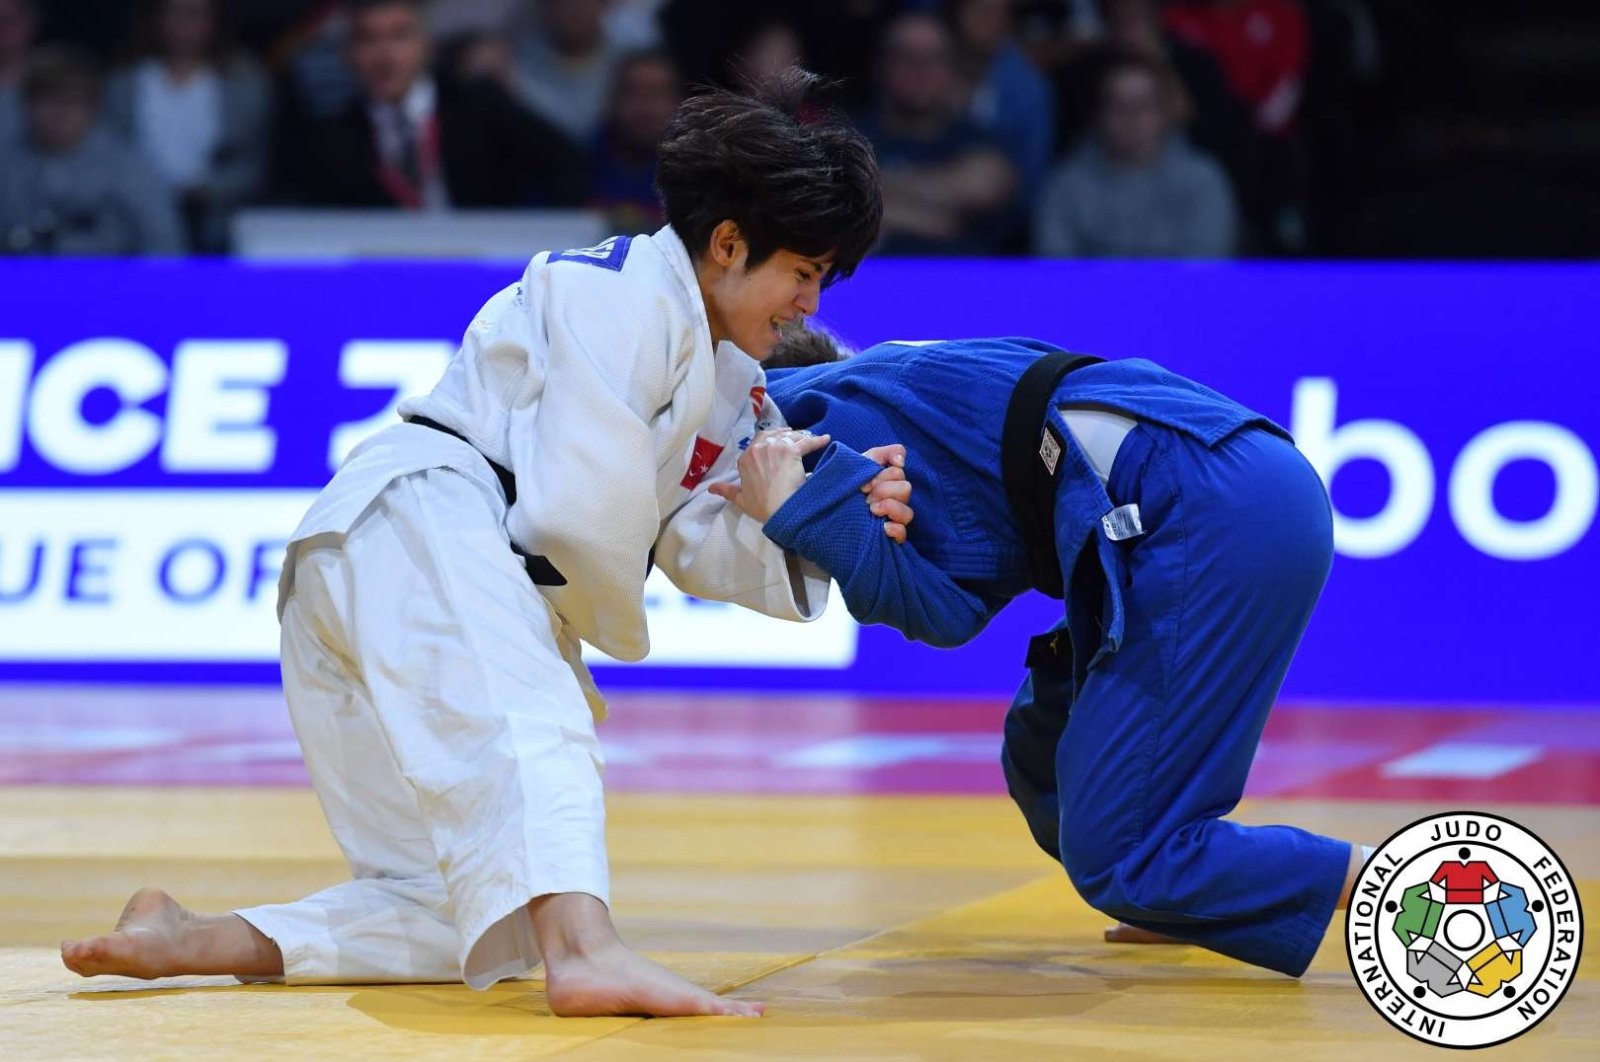 Judoka nasional Tuğçe Beder meraih tempat ke-5 di Paris Grand Slam